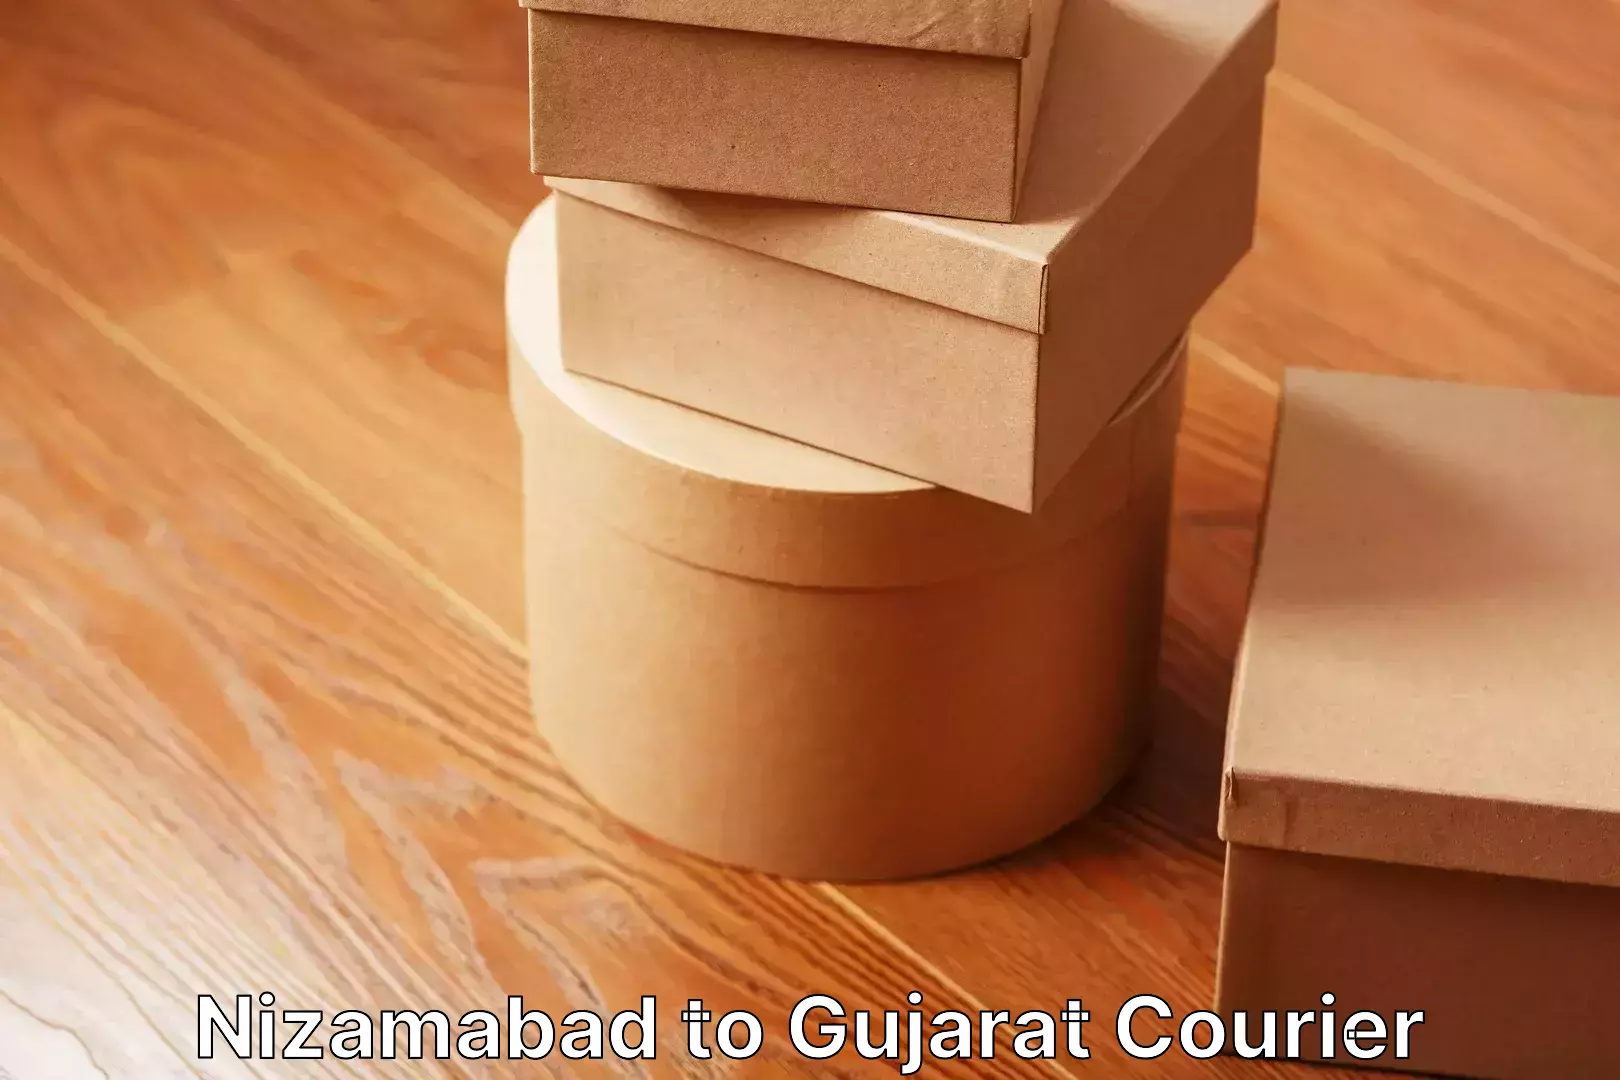 Home shifting experts Nizamabad to Gujarat